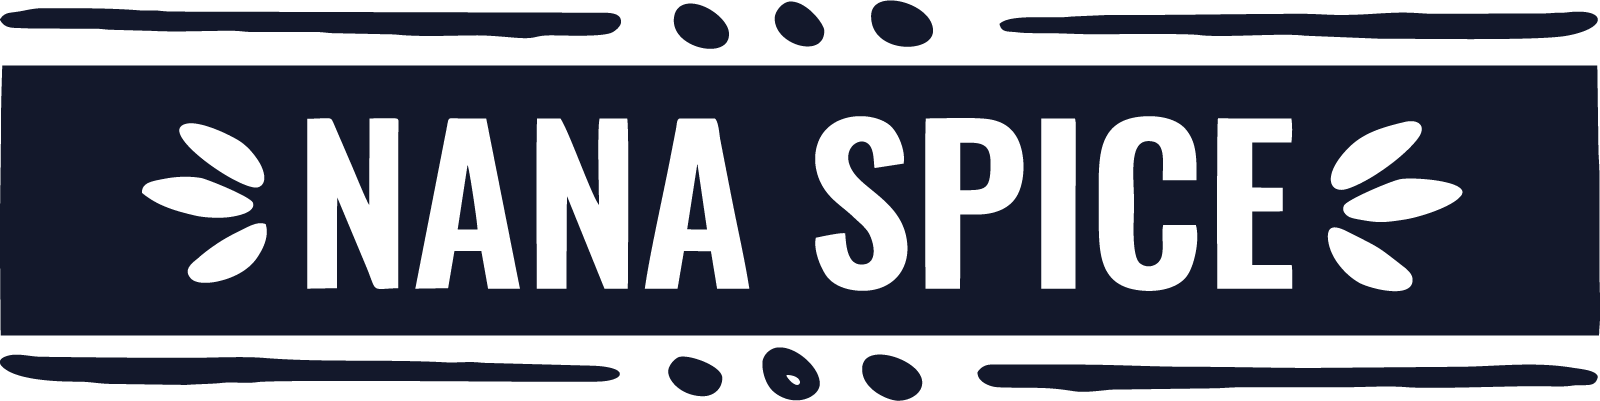 Nana Spices